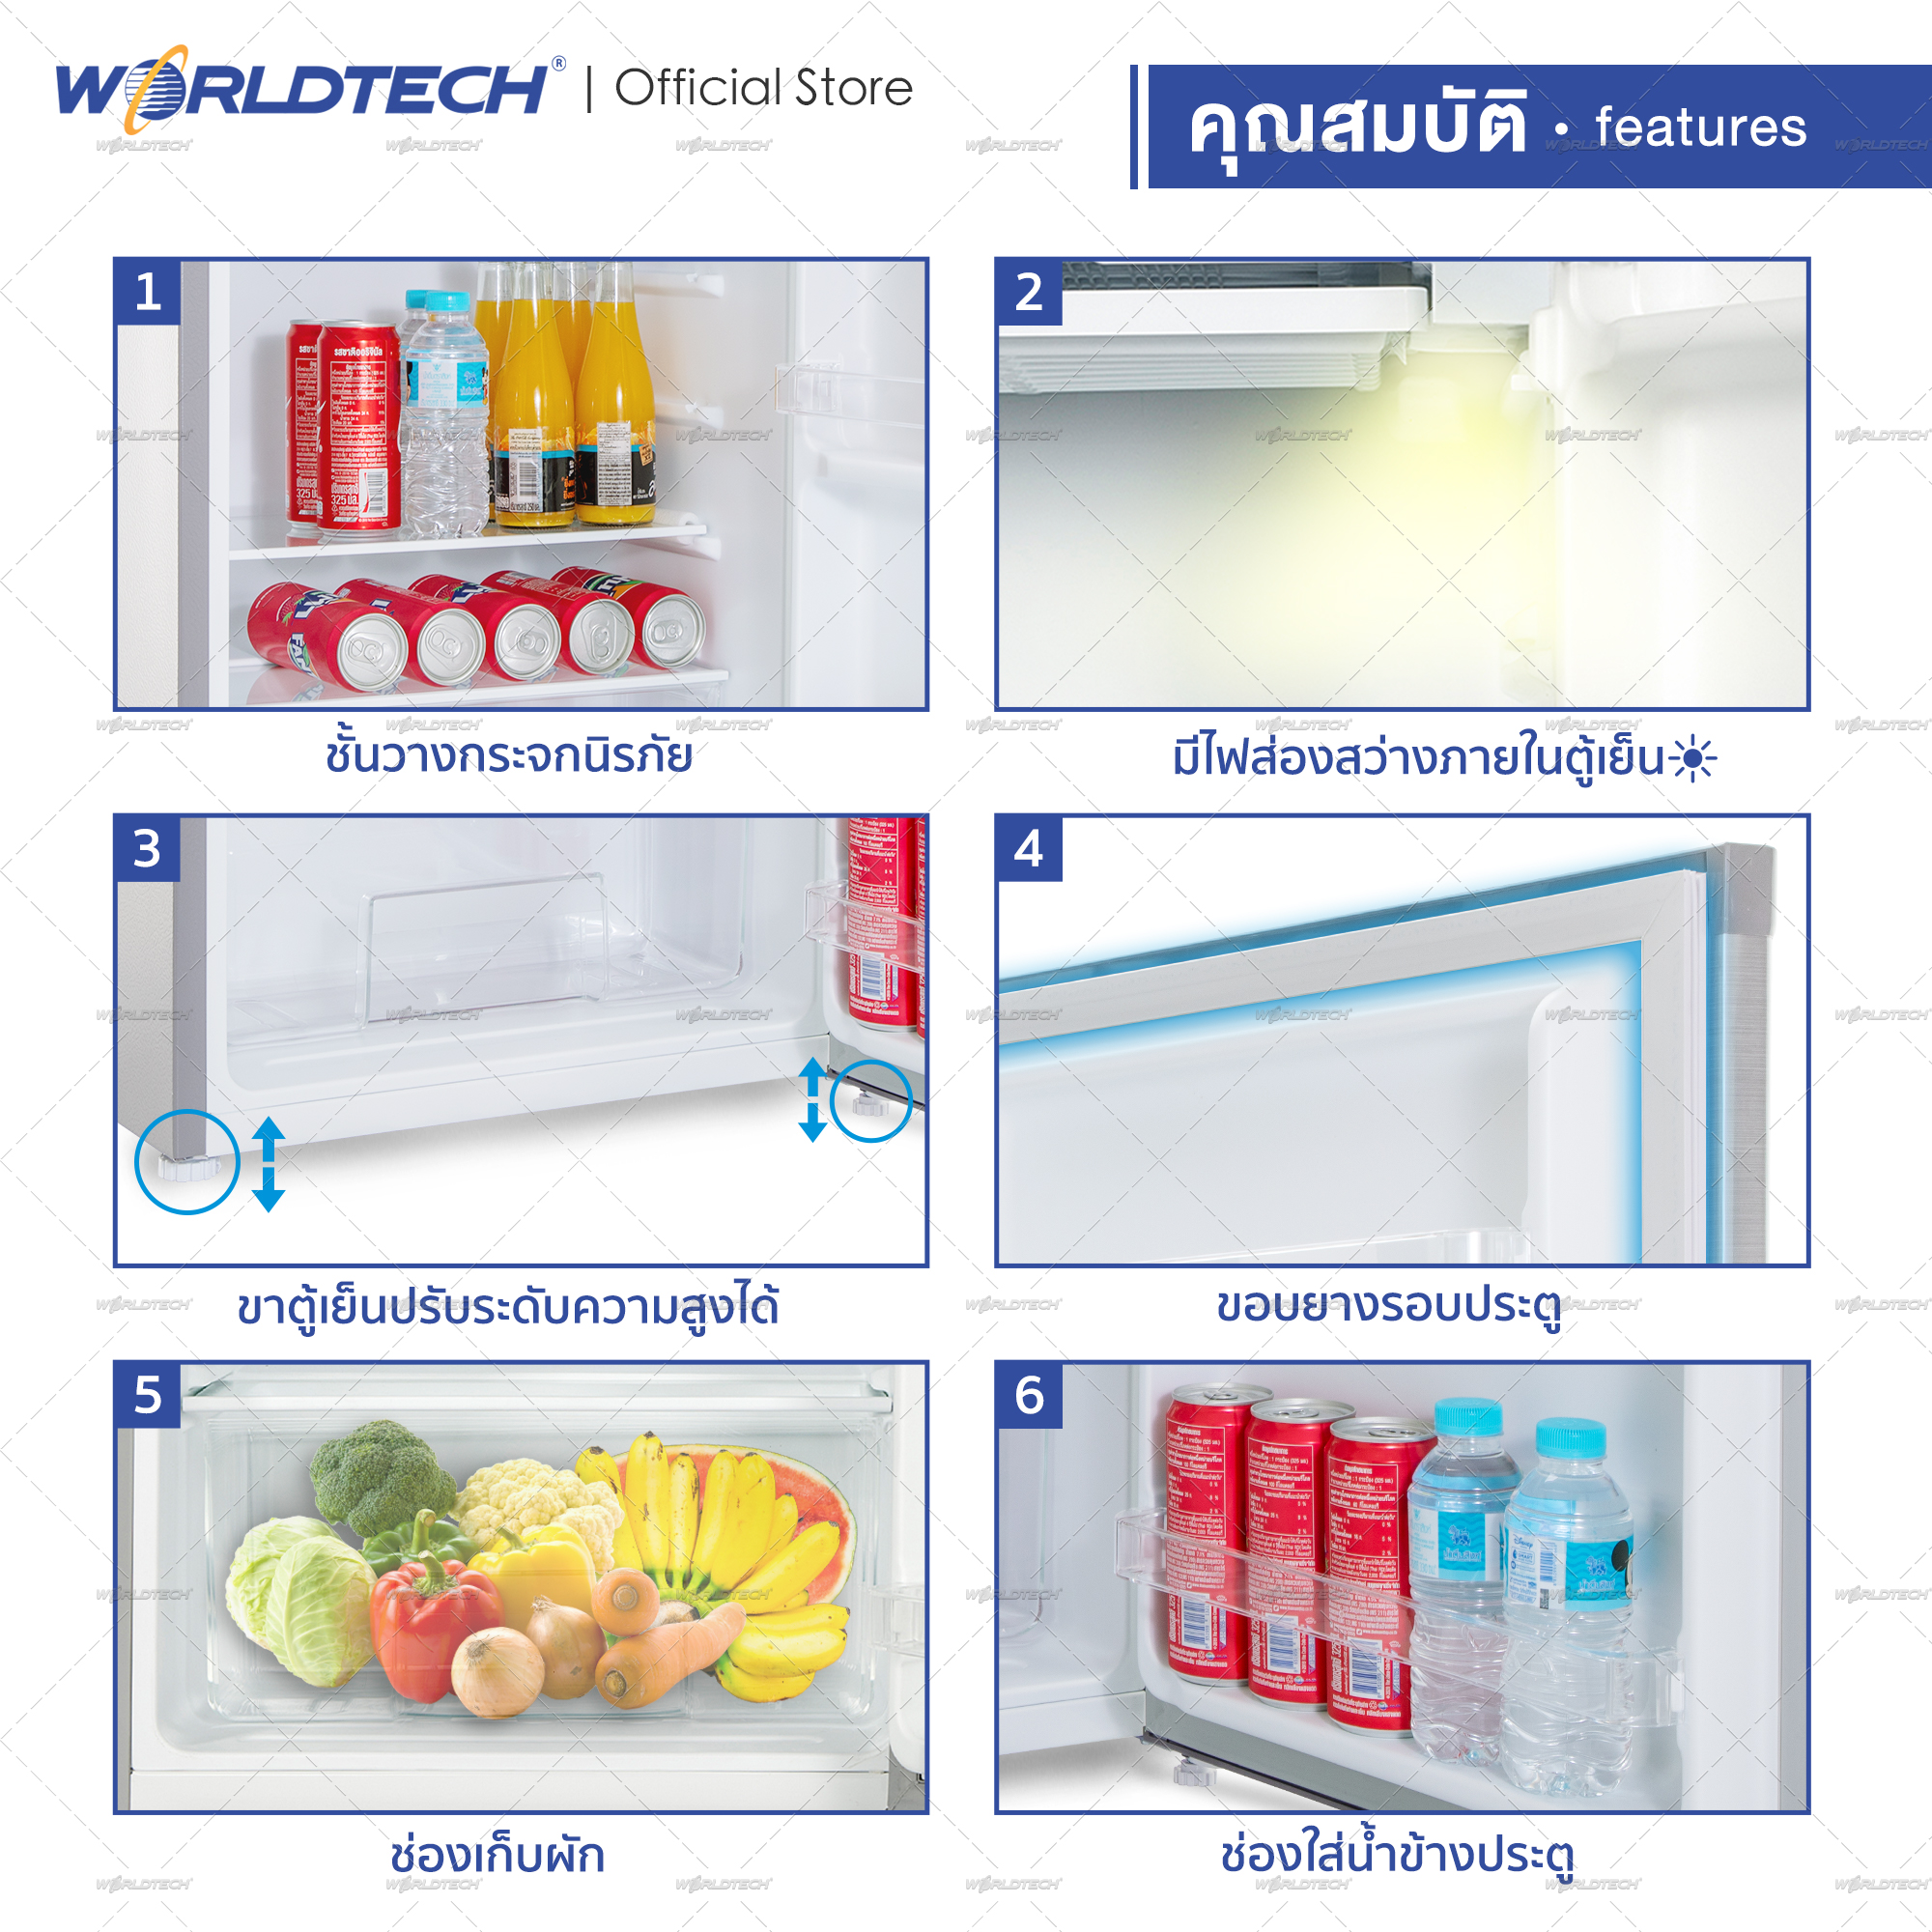 Worldtech ตู้เย็นเล็ก 3.3 คิว รุ่น WT-RF101 ตู้เย็นขนาดเล็ก ตู้เย็นมินิ ตู้แช่ ตู้เย็น 1 ประตู ความจุ 92 ลิตร แบบ 1 ประตู ตู้เย็นประหยัดไฟเบอร์ 5 รับประกัน 1 ปี